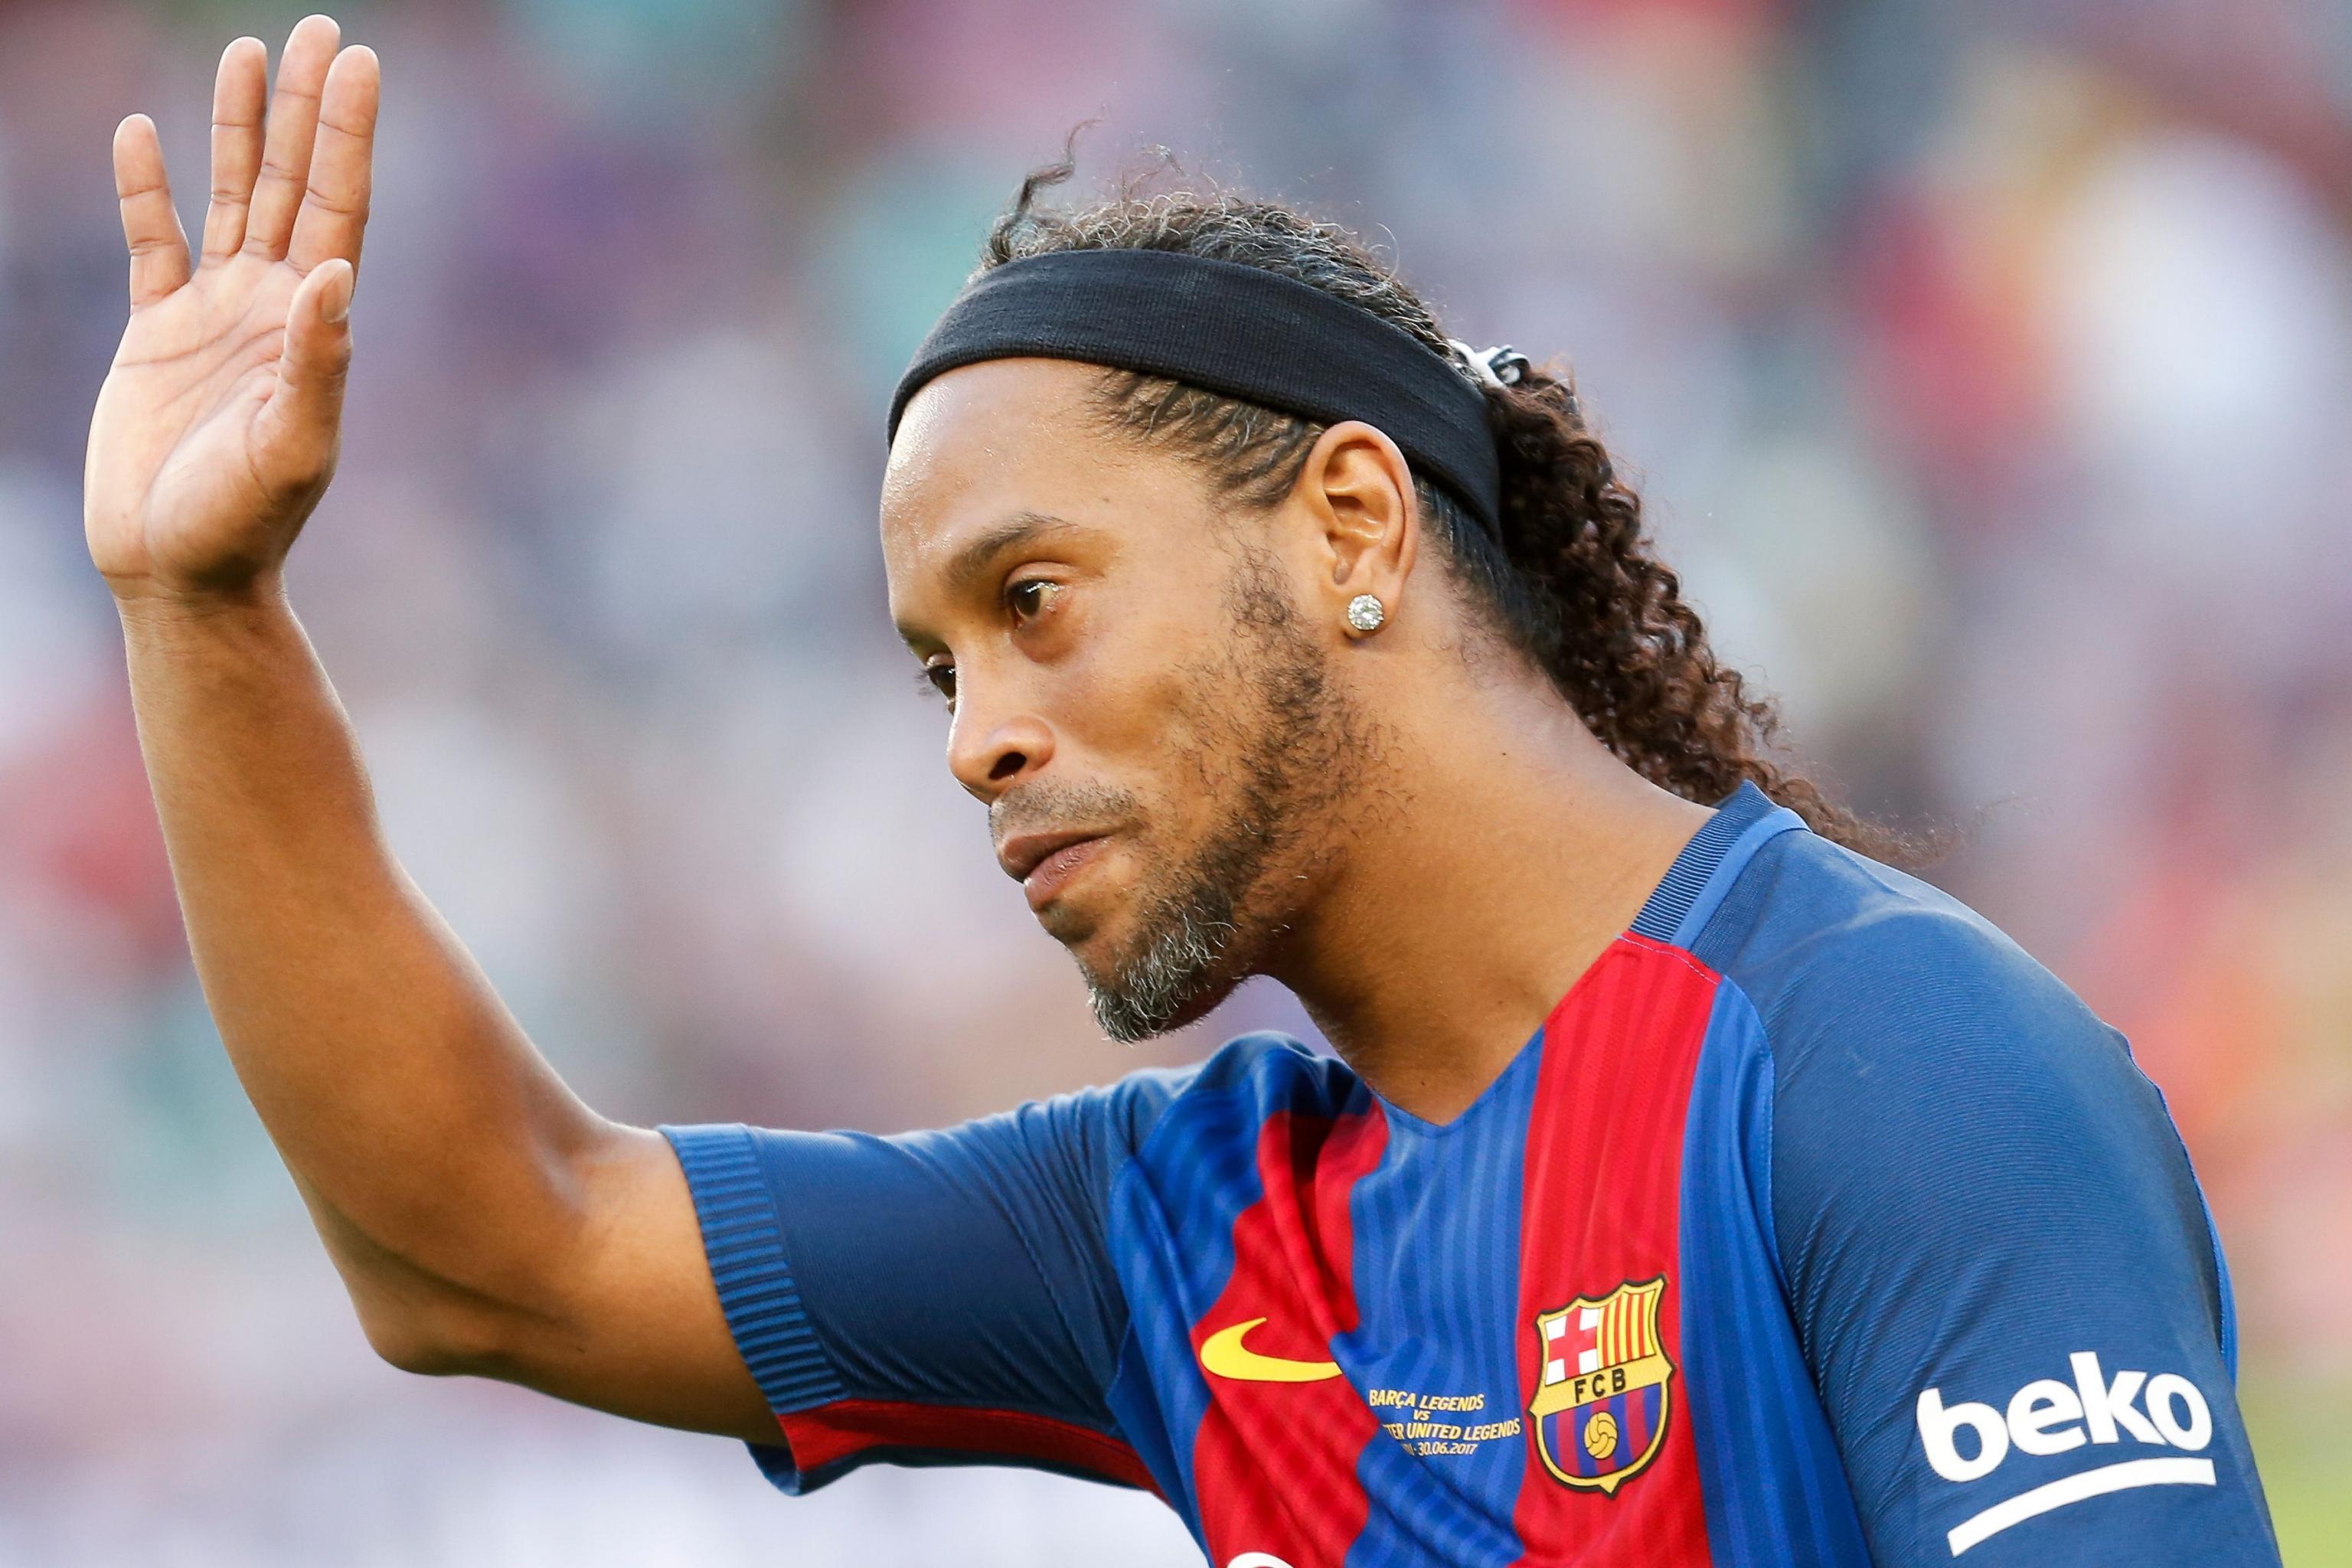 FIFA 18 updates: Ronaldinho, FUT ICONS and more